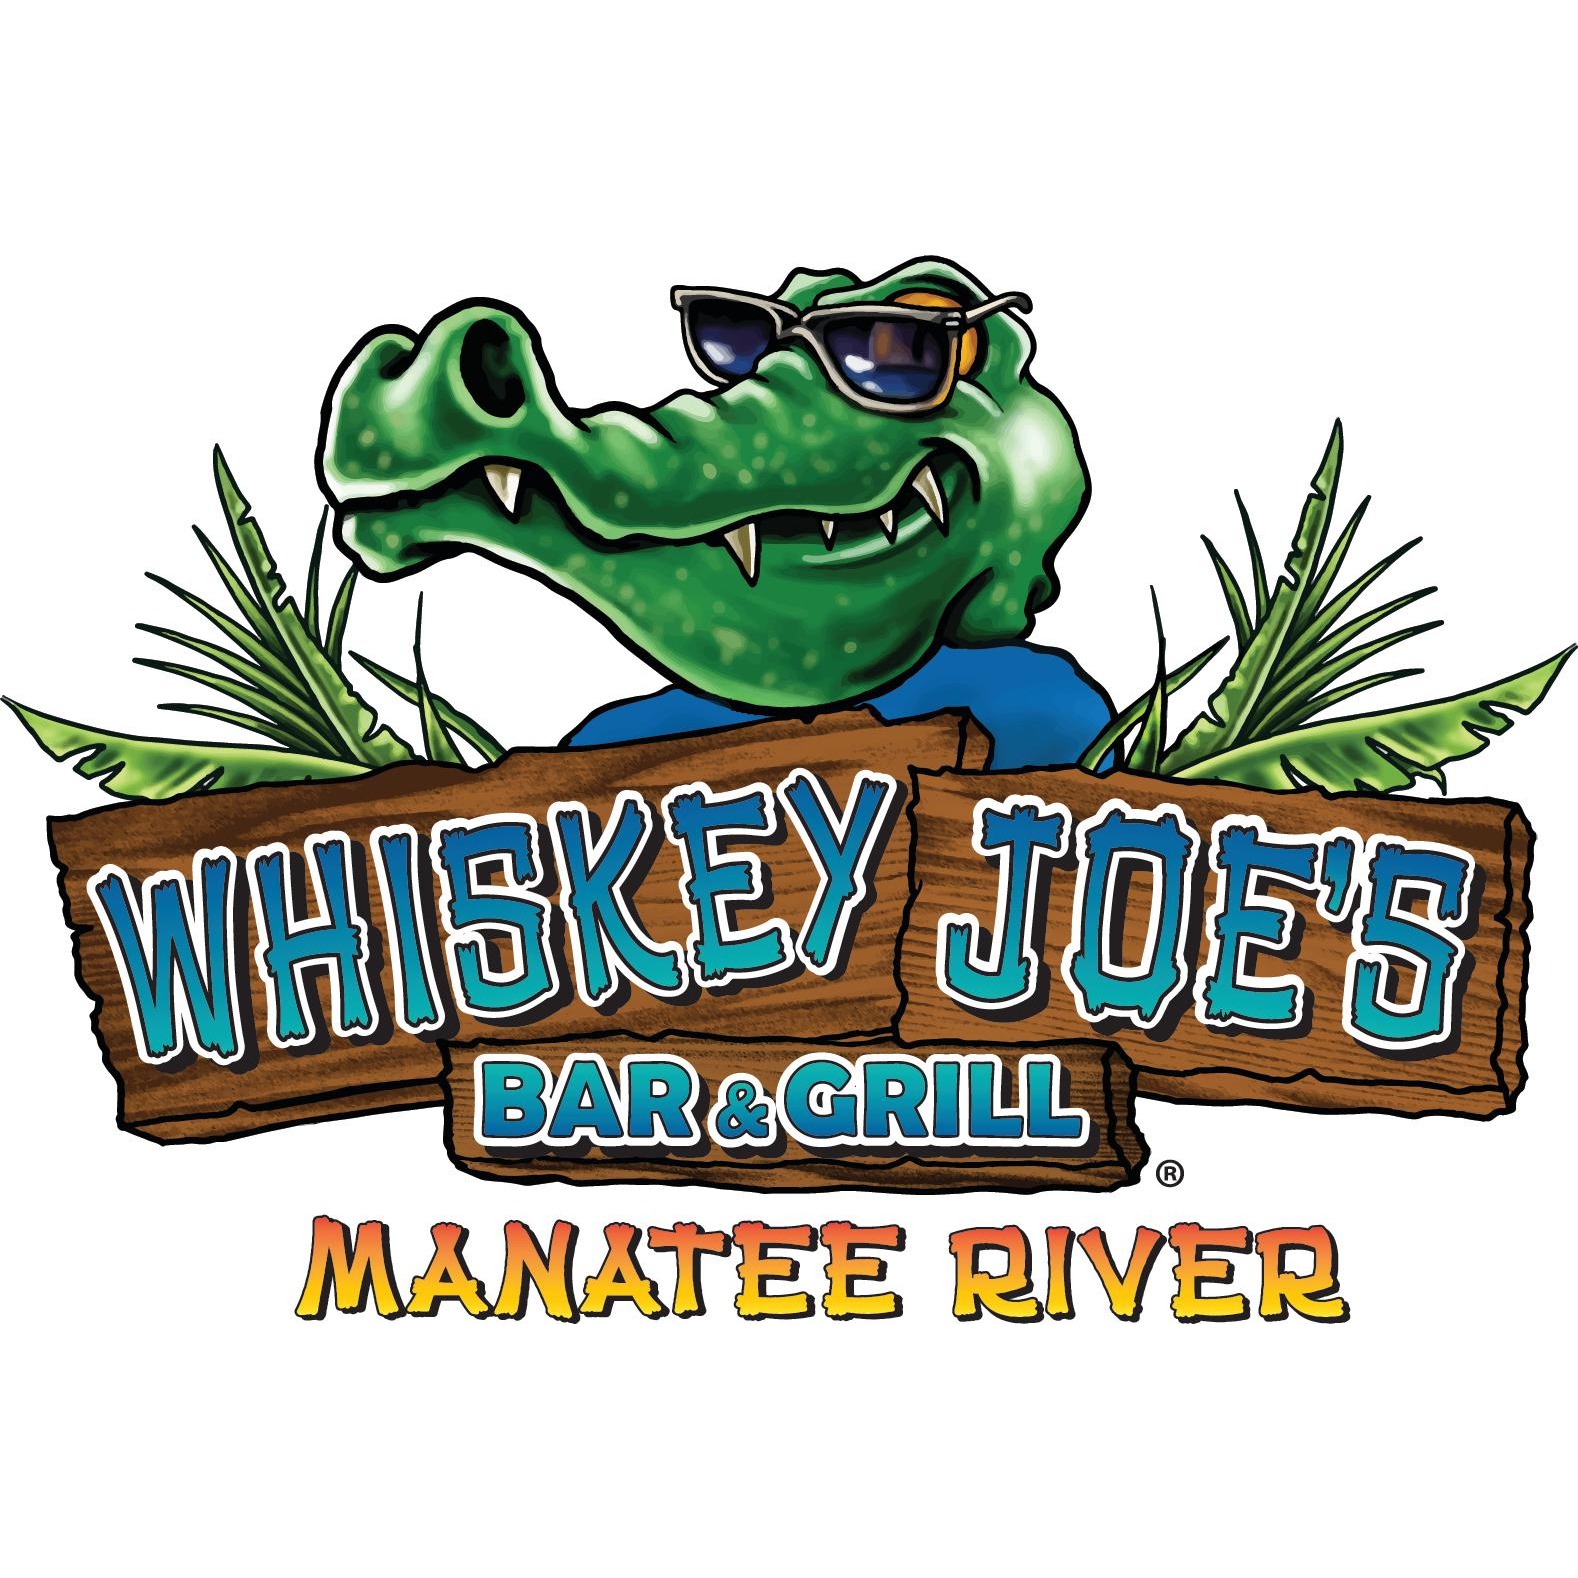 Whiskey Joe's Bar & Grill - Manatee River Logo